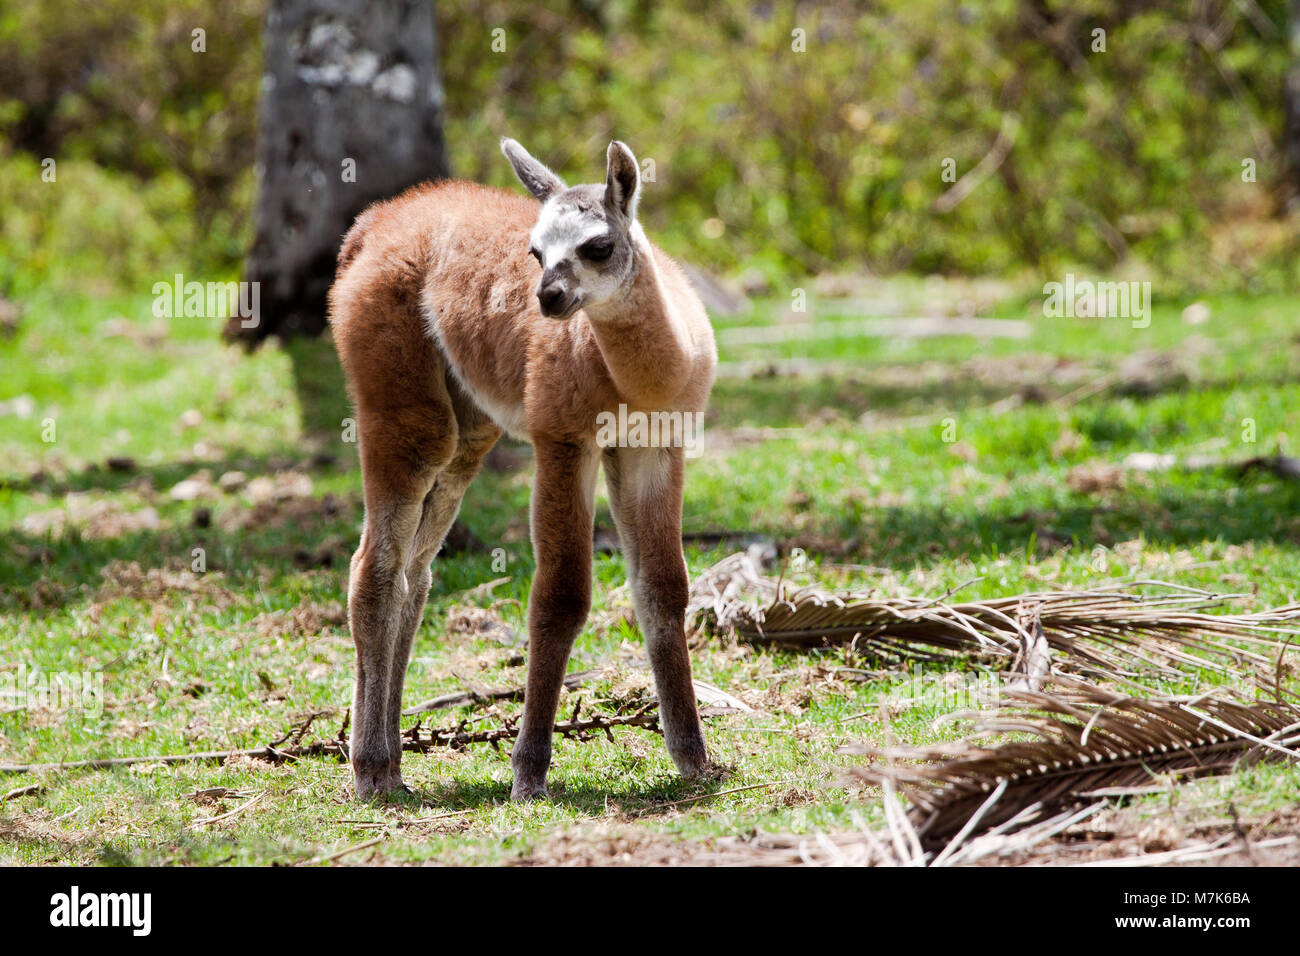 Baby alpaca, Vicugna pacos, appena dieci giorni di età. L'alpaca è una specie animali domestiche di South American camelid. Assomiglia ad un piccolo llama in appearanc Foto Stock